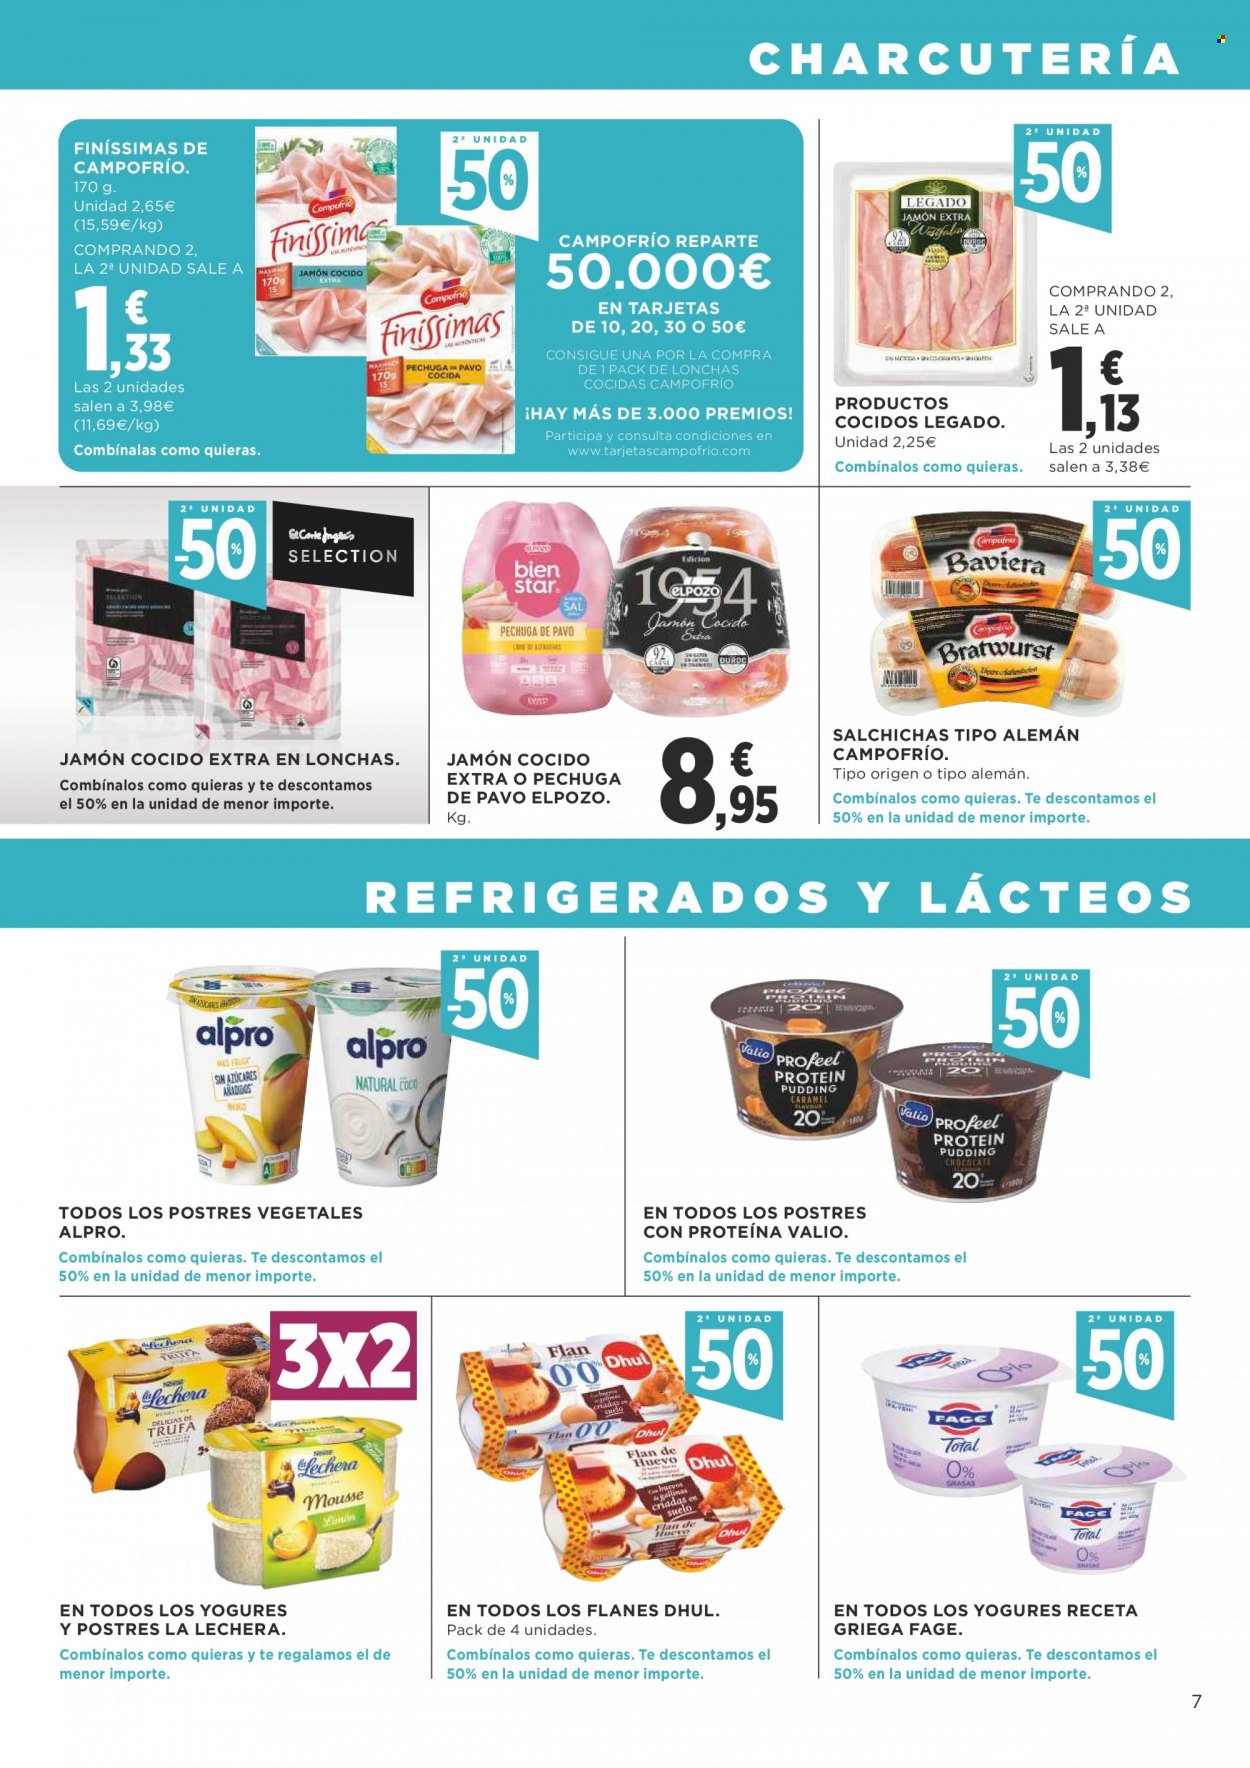 thumbnail - Folleto actual Supercor supermercados - 13/01/22 - 26/01/22 - Ventas - pavo, pechuga de pavo, Campofrío, Alpro, jamón, jamón cocido, salchicha, La Lechera. Página 7.